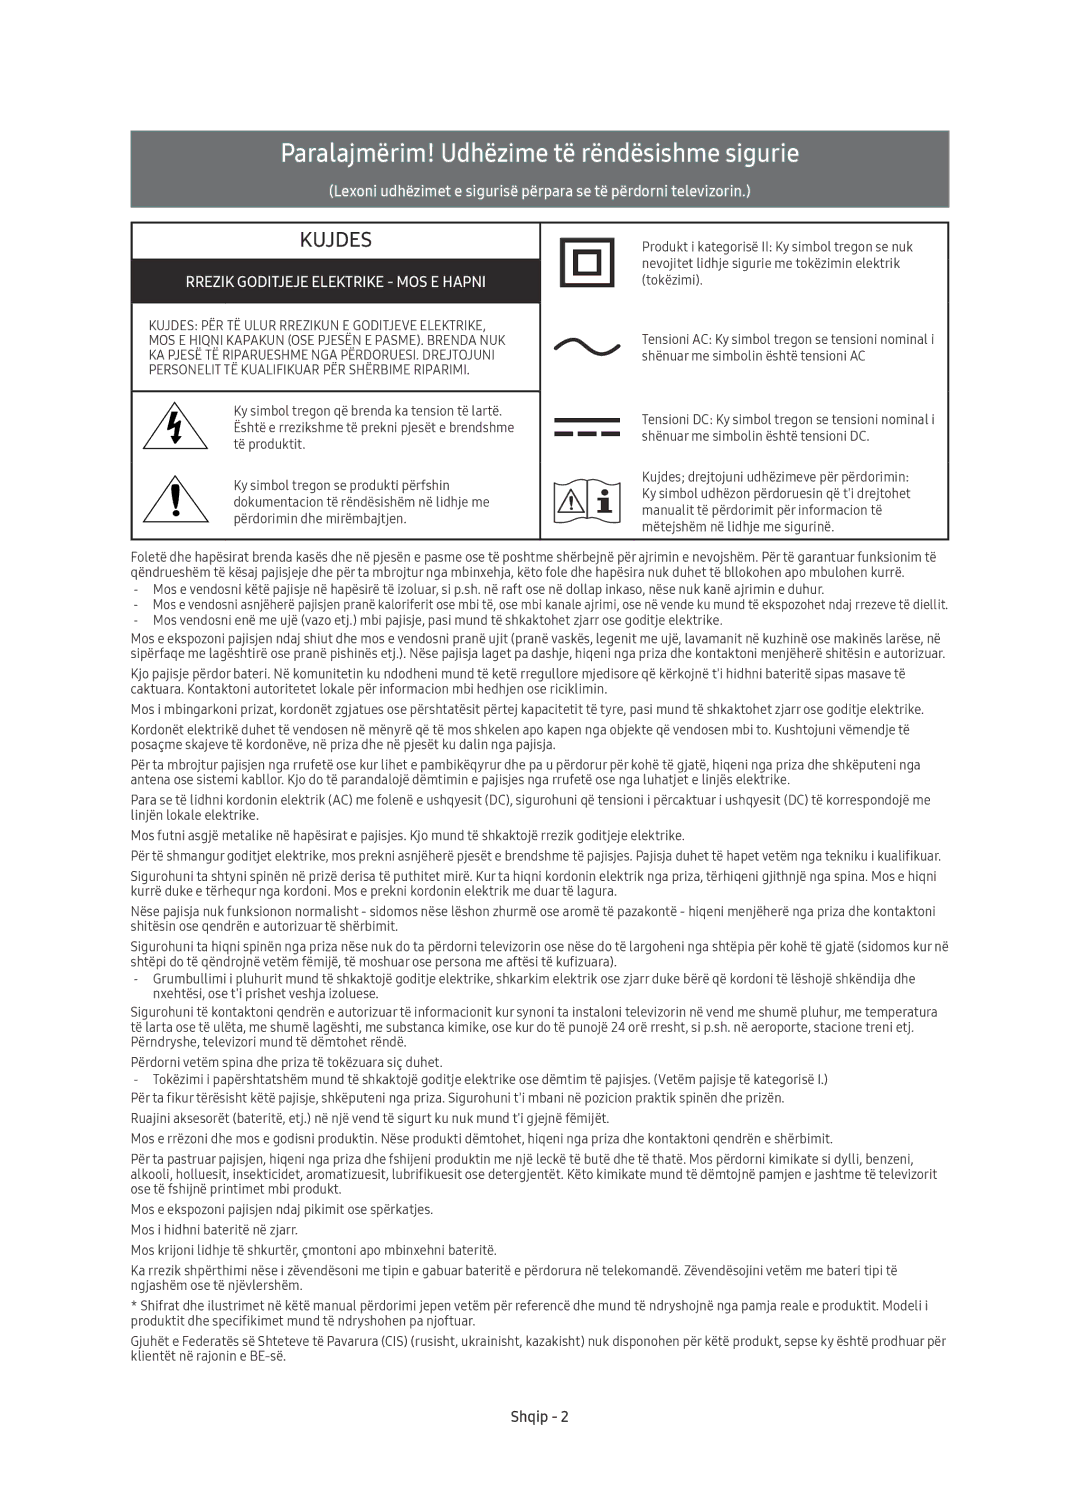 Samsung UE78KU6500SXXN manual Paralajmërim! Udhëzime të rëndësishme sigurie, Rrezik Goditjeje Elektrike MOS E Hapni, Shqip 